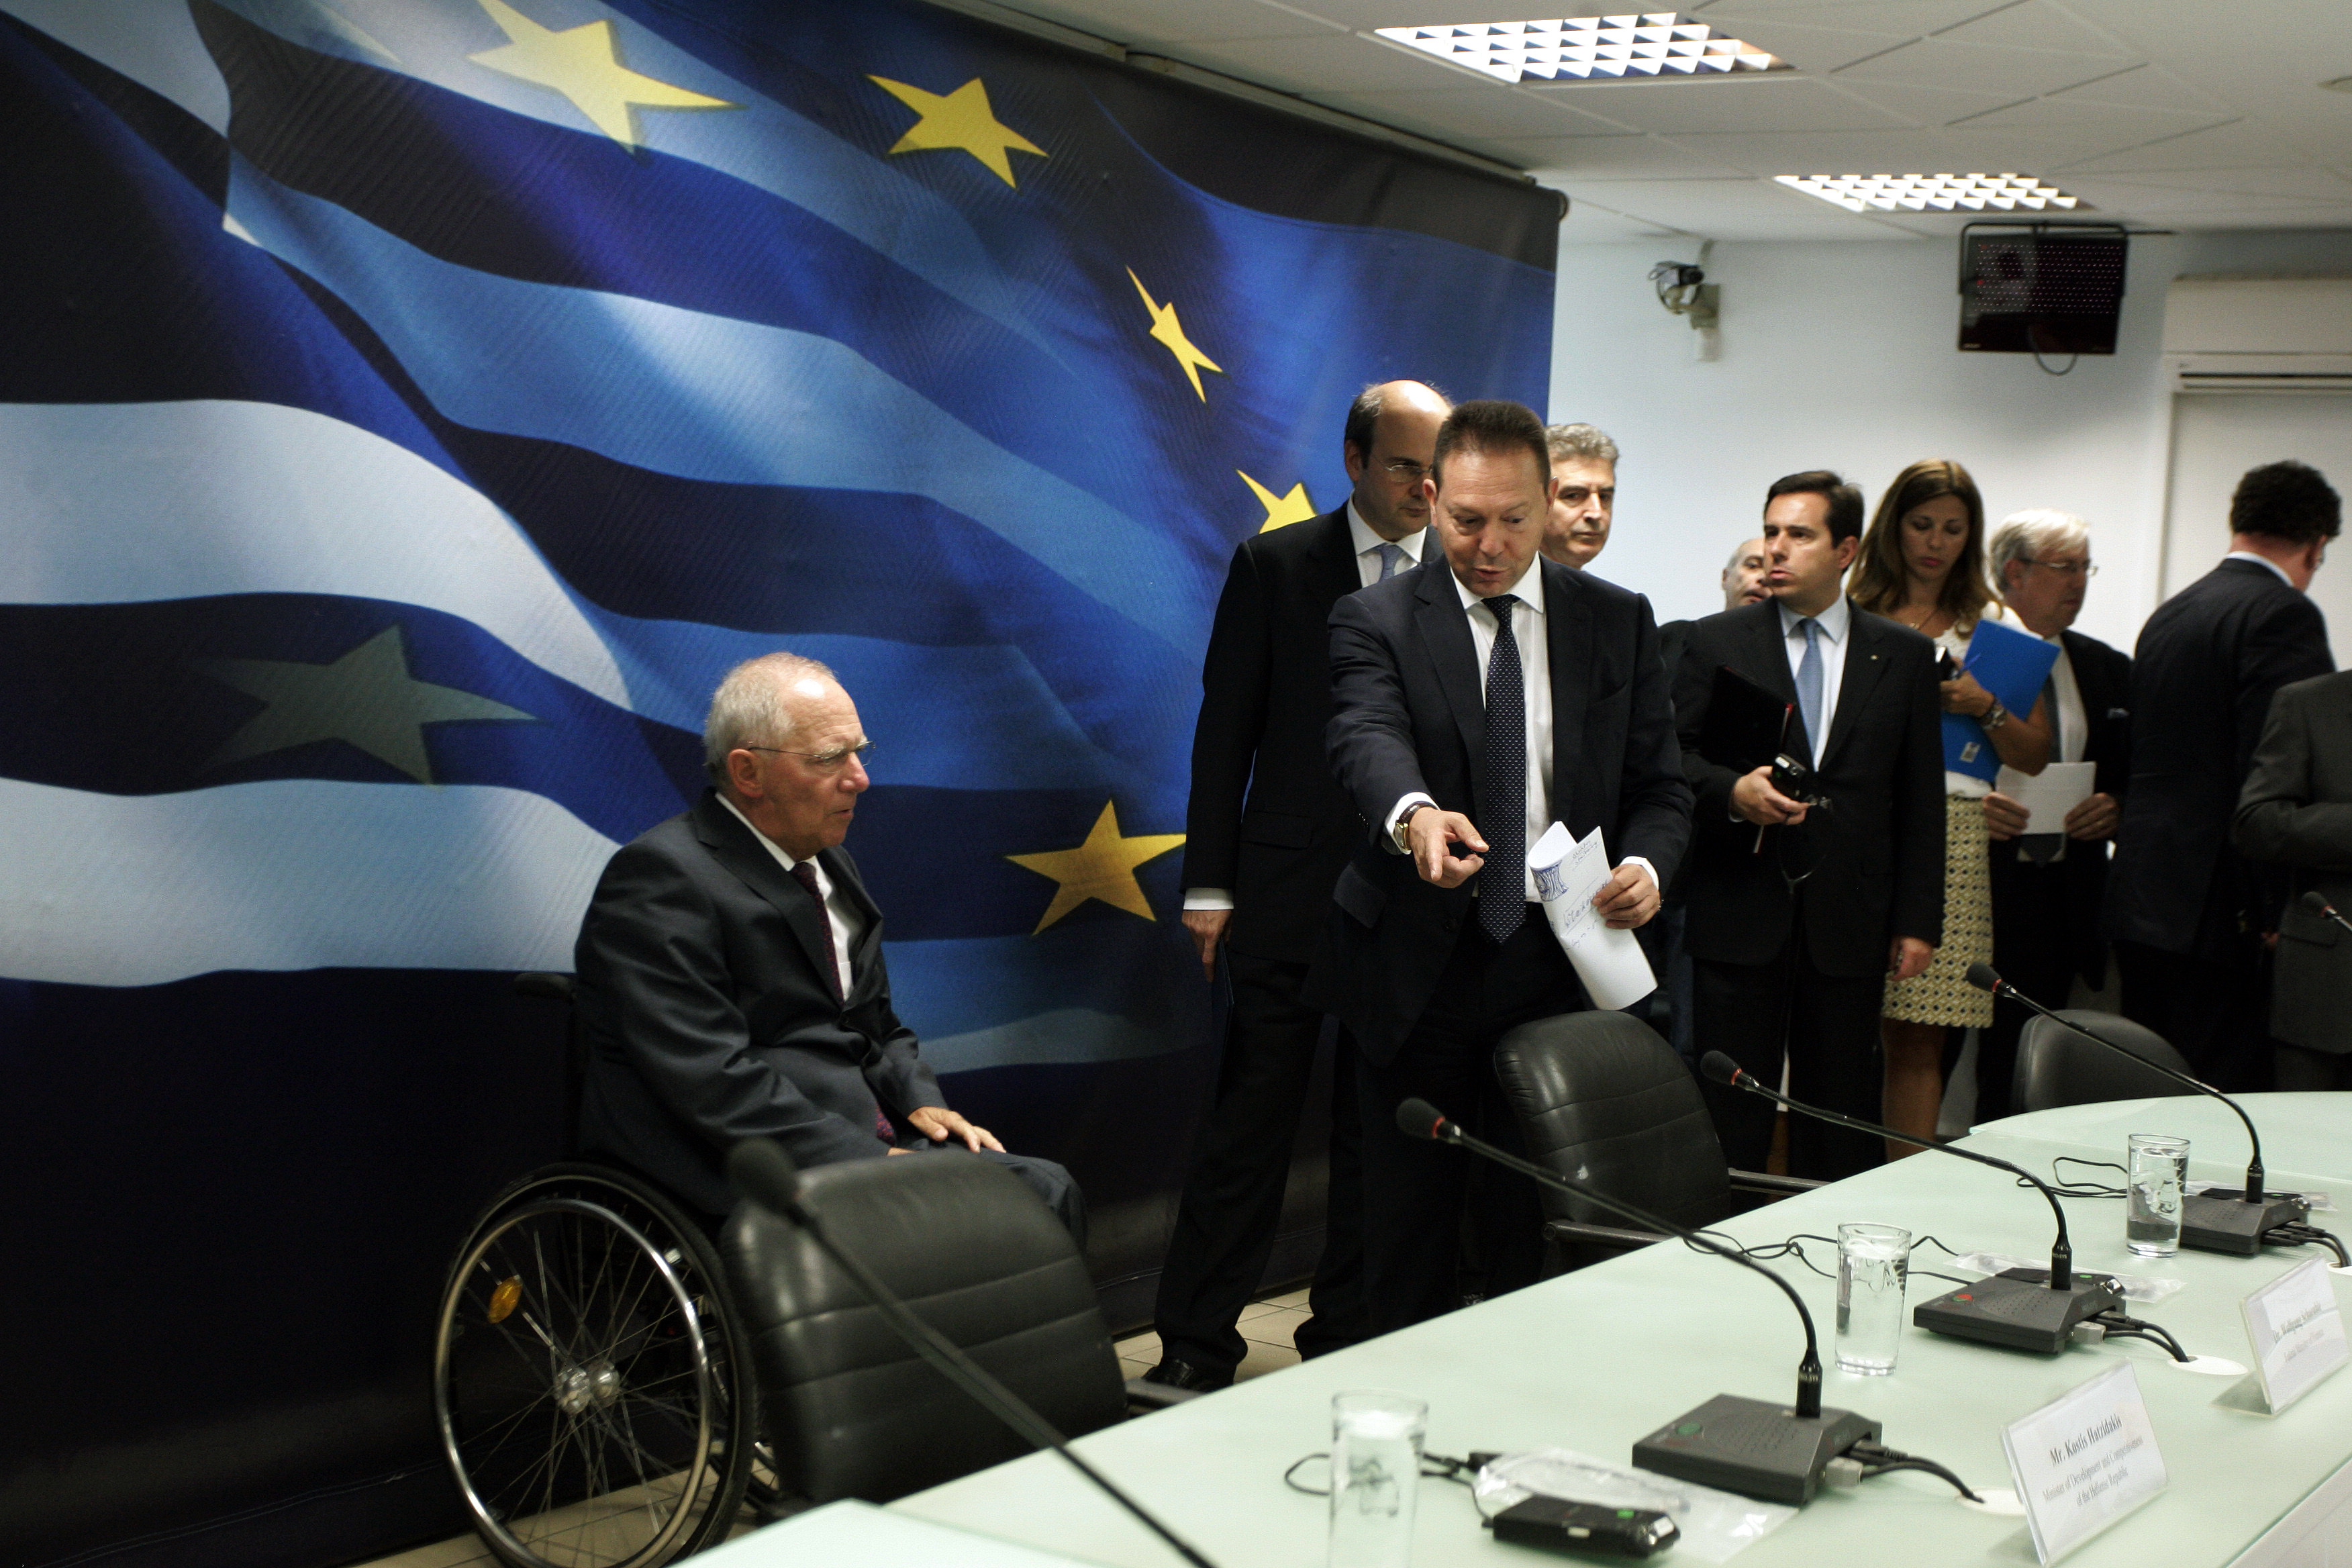 Και ξαφνικά ο Σόιμπλε απευθύνει έκκληση στους Έλληνες πολίτες: Μην παρασύρεστε από ανεύθυνους πολιτικούς!